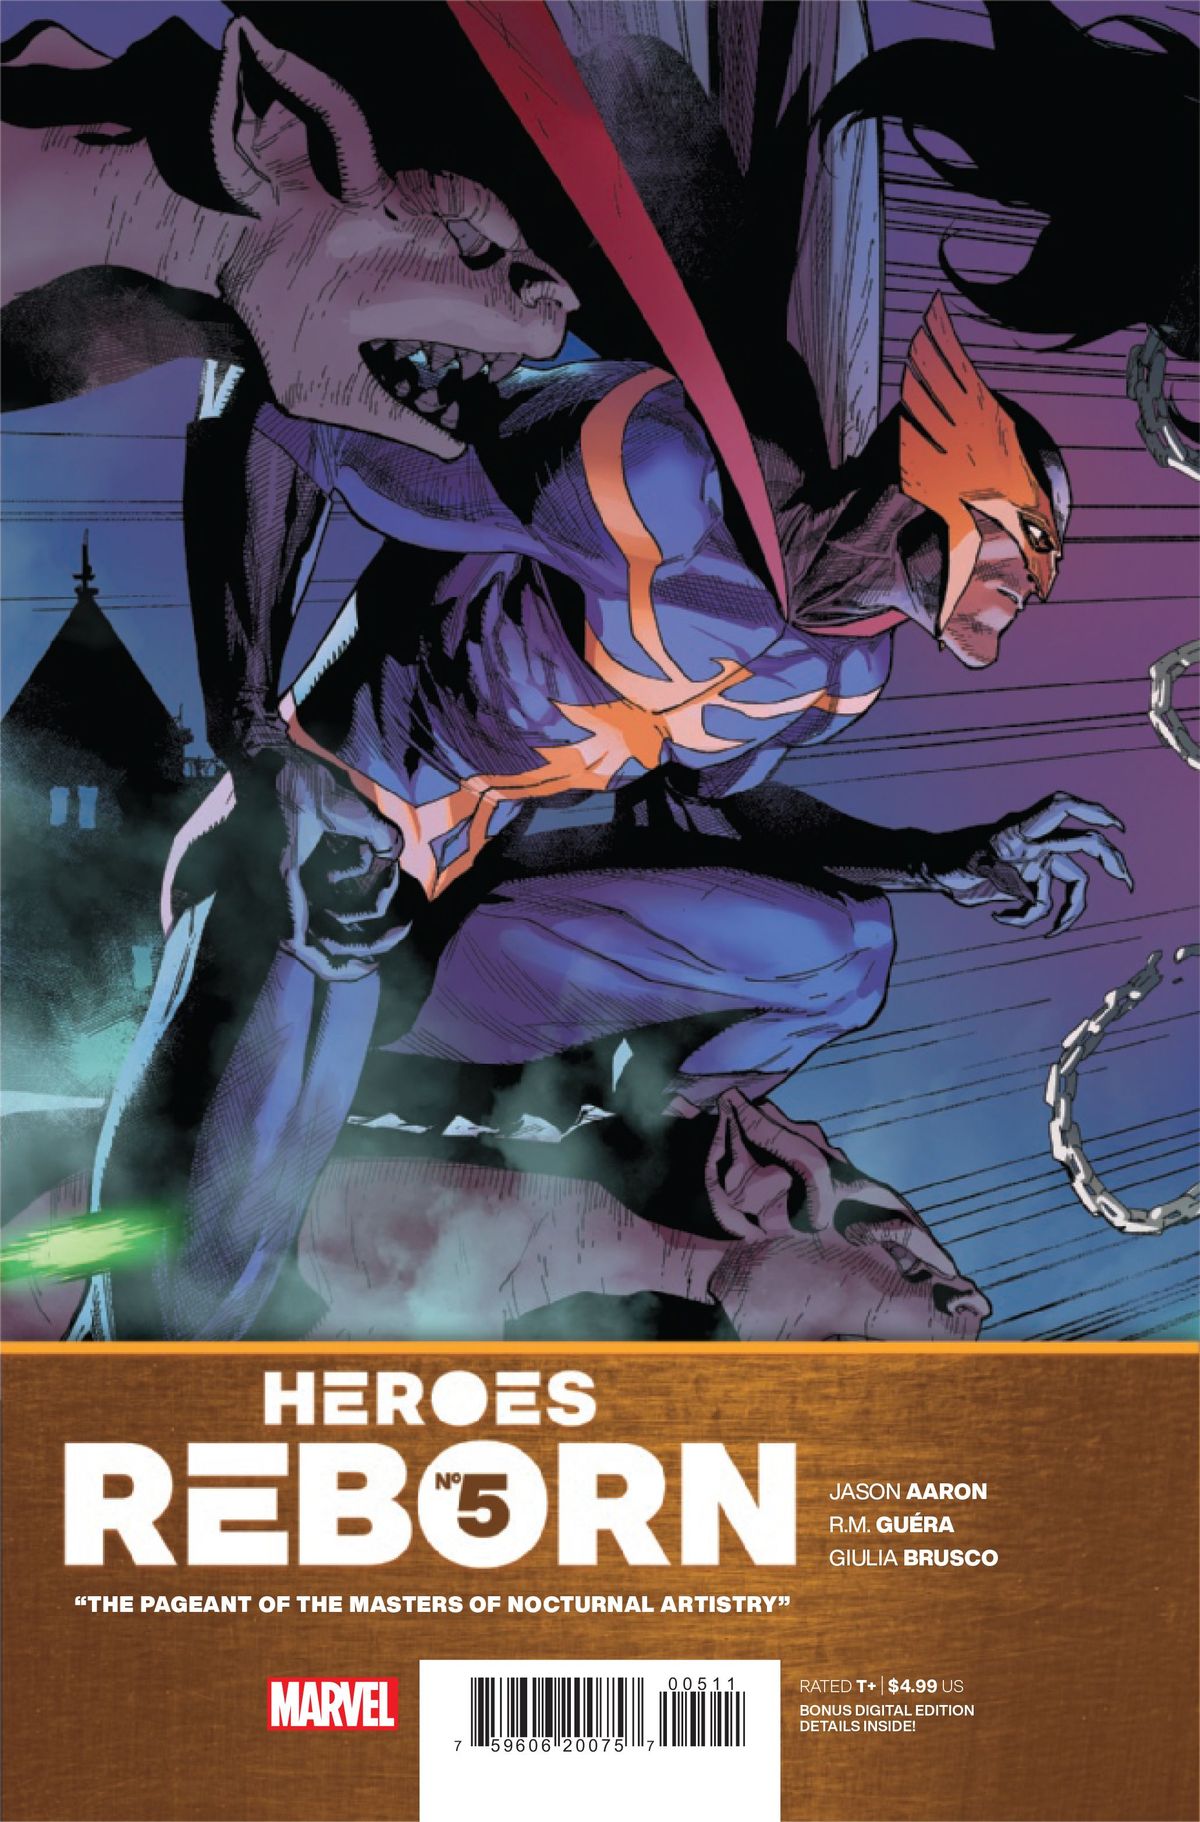 XEM TRƯỚC: Heroes Reborn # 5 Tái tạo lại cuộc đi săn cuối cùng của Kraven với một cú vặn người dơi (Độc quyền)